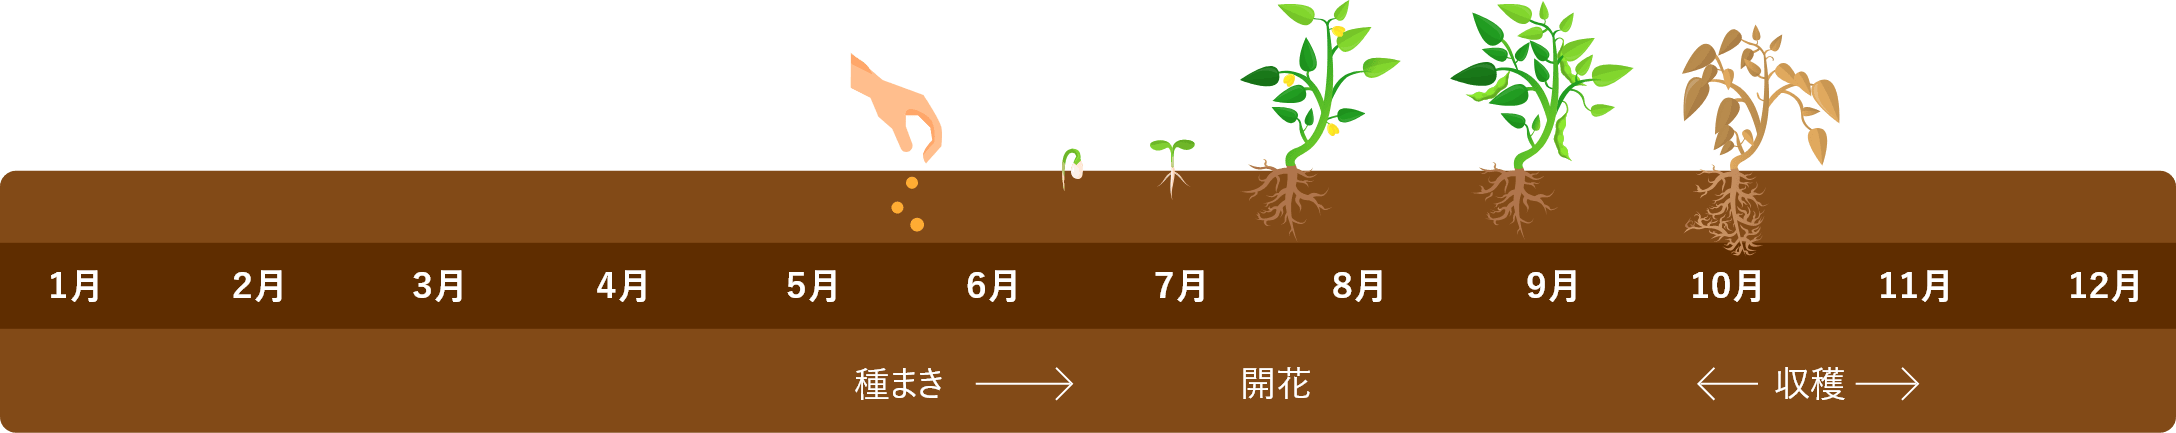 小豆栽培スケジュール